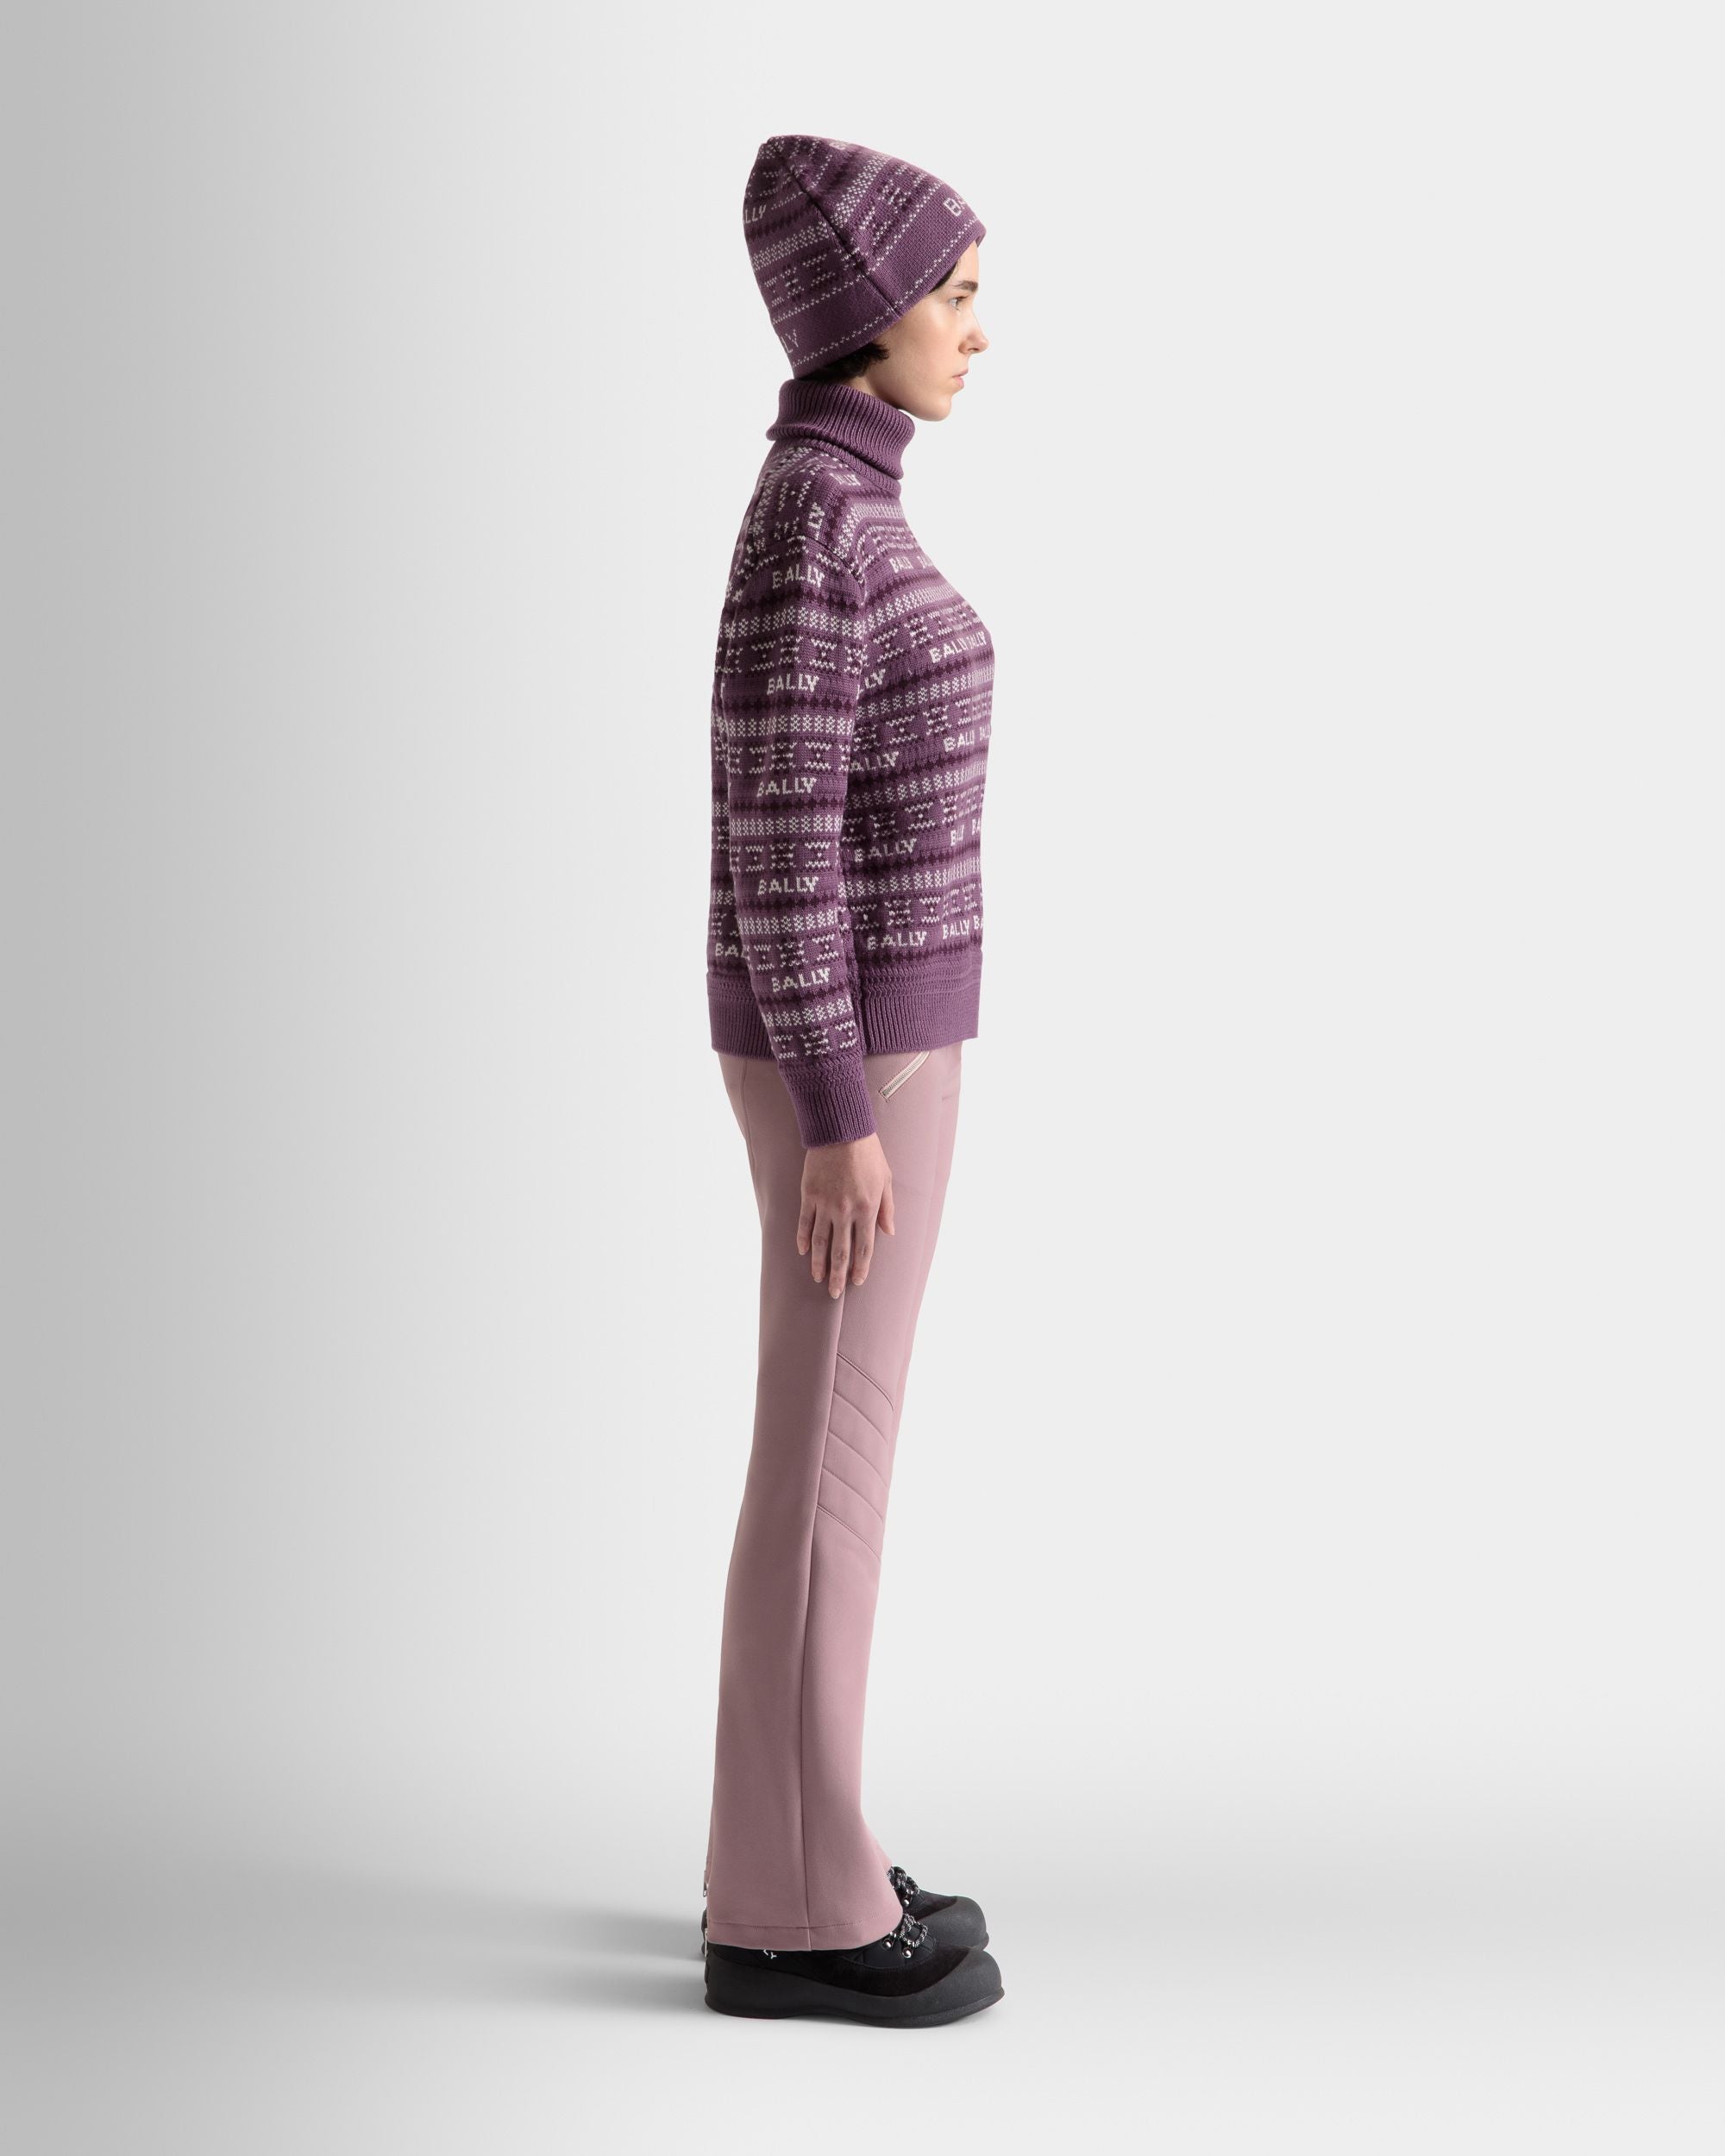 Damen-Rollkragenpullover aus lila Wolle | Bally | Model getragen 3/4 Vorderseite